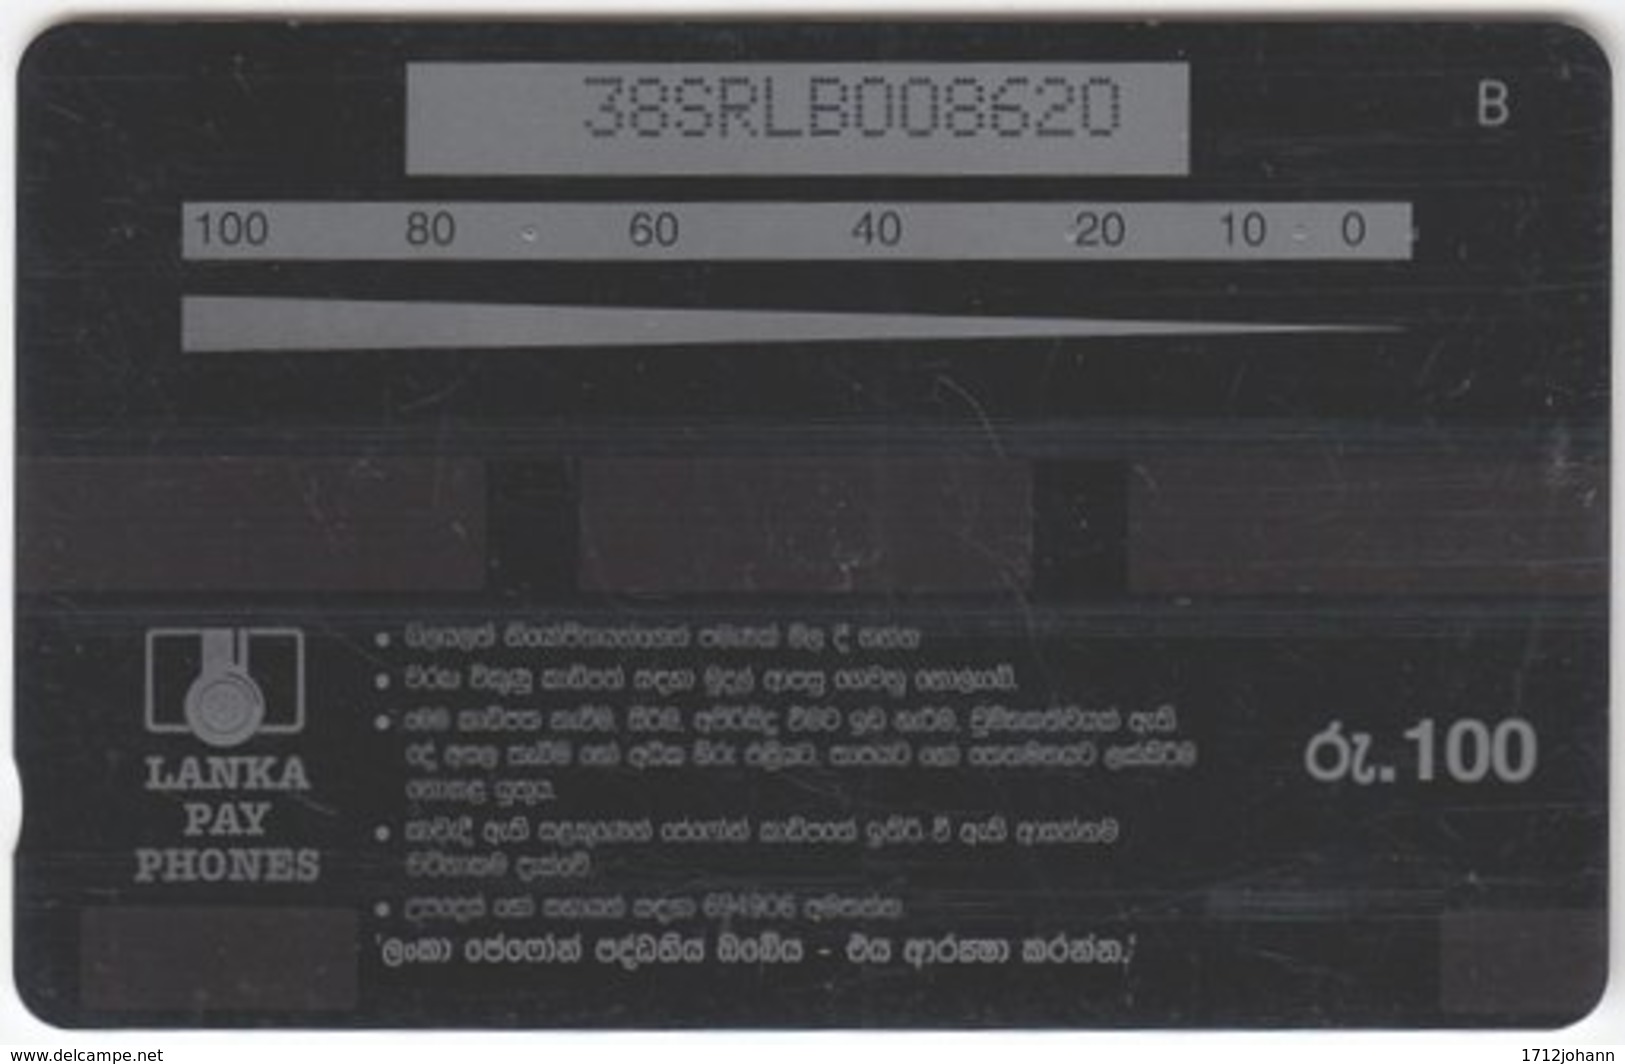 SRI LANKA A-087 Magnetic LankaPayPhones - 38SRLB - Used - Sri Lanka (Ceylon)